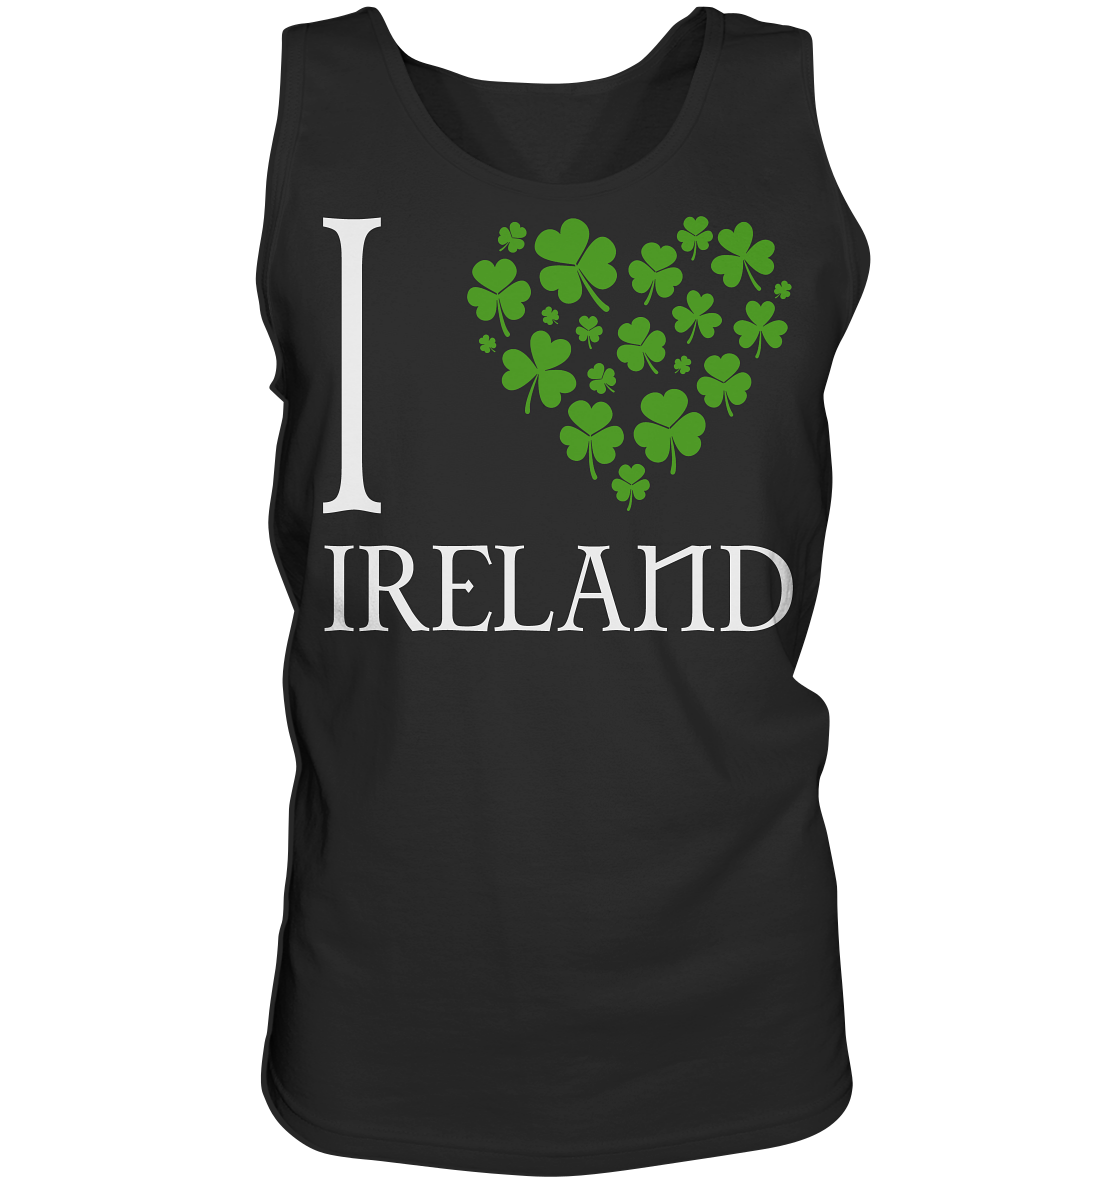 I Love Ireland - Tank-Top